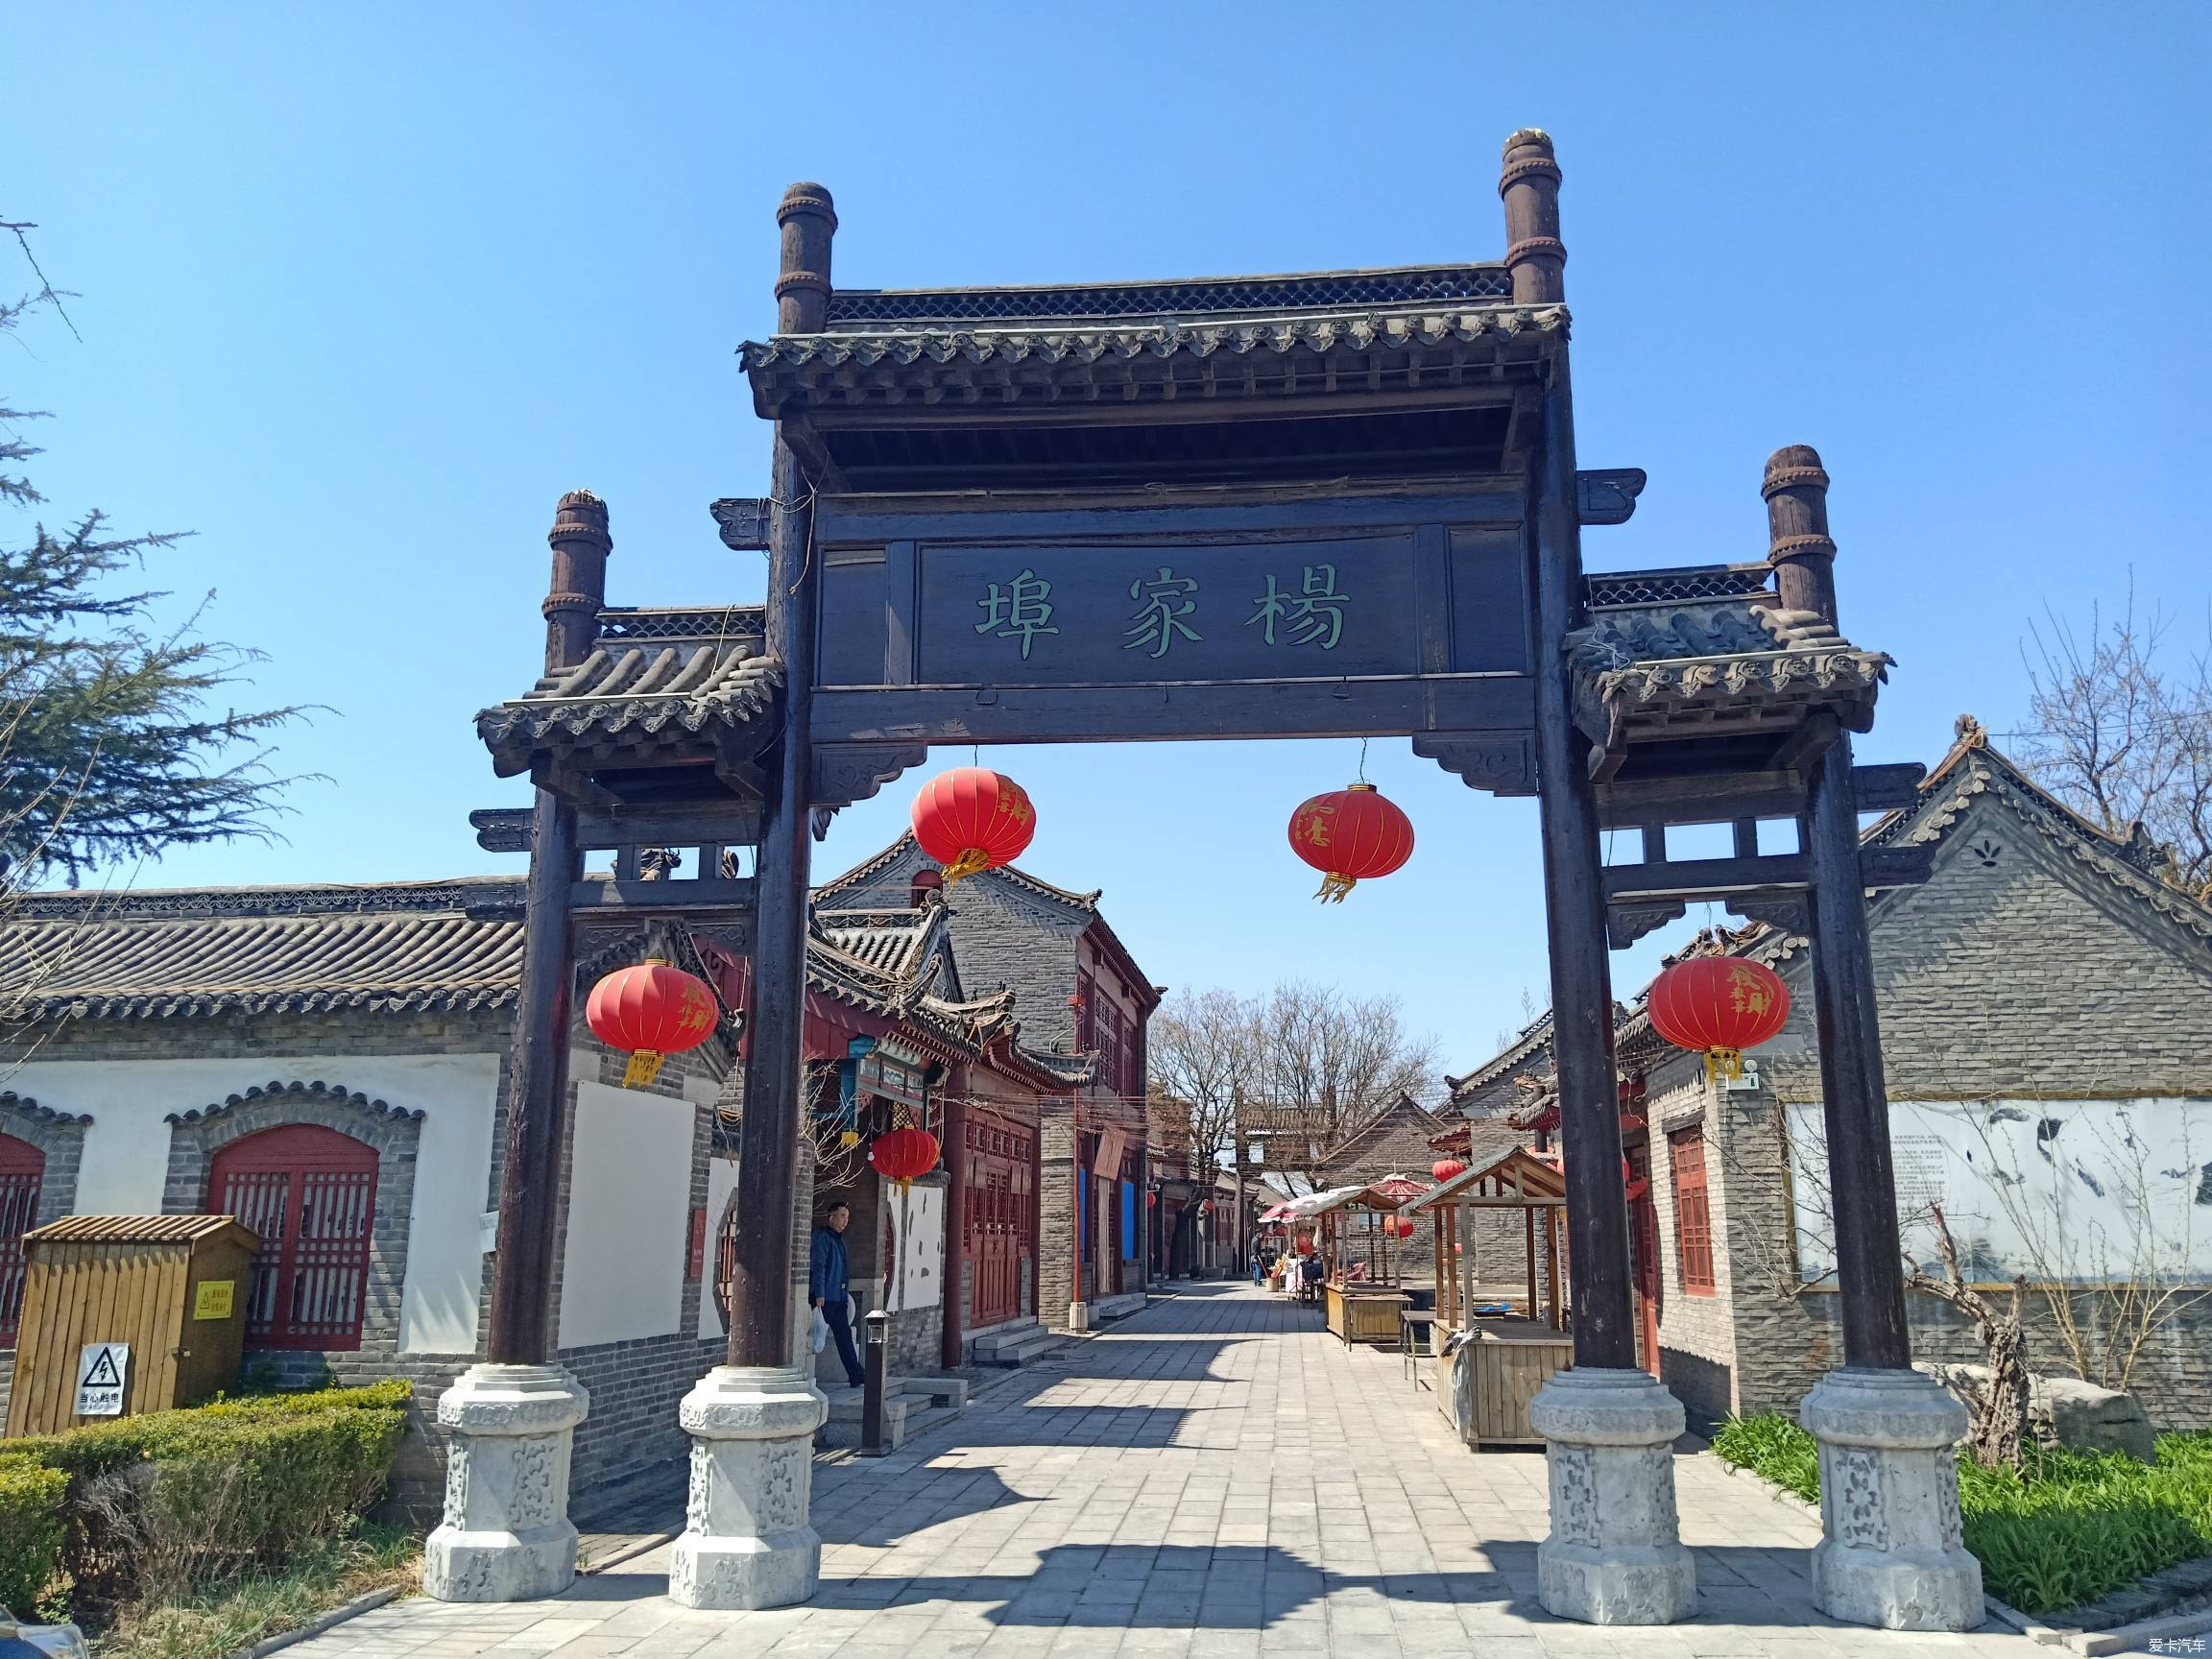 修缮中的中国杨家埠民间艺术大观园